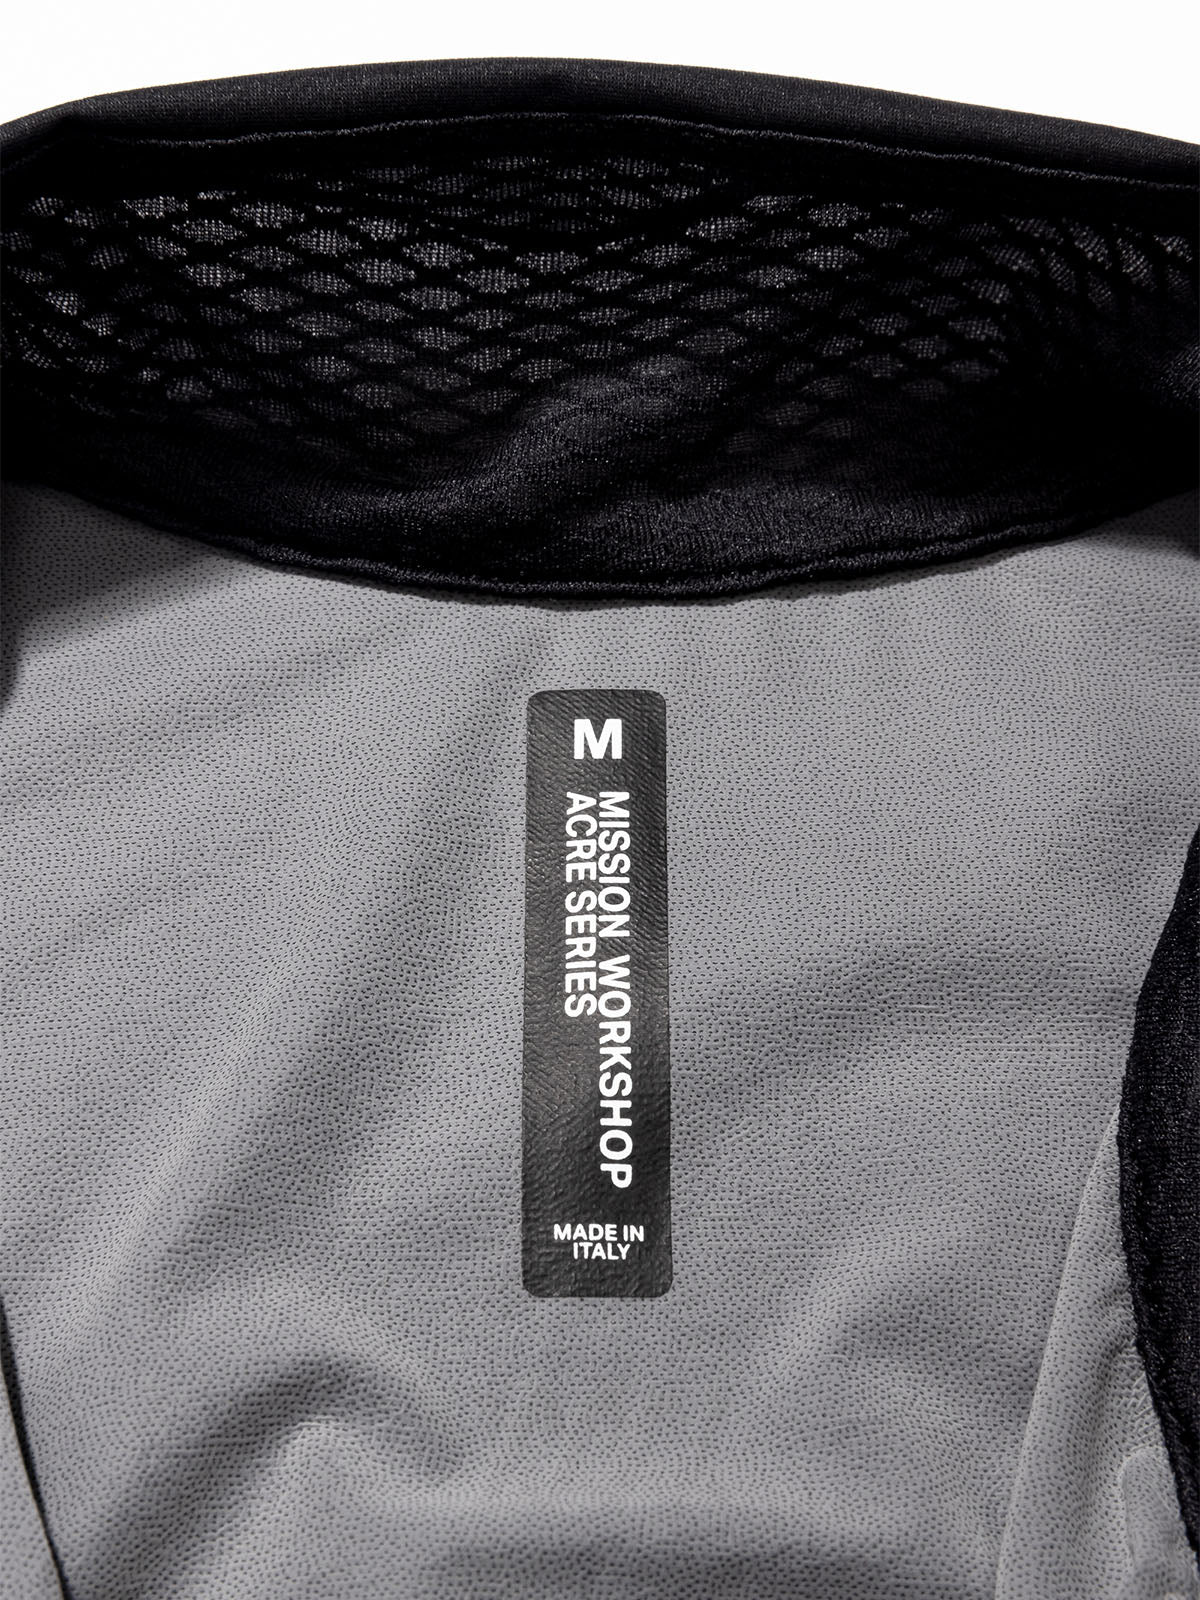 Altosphere Jacket by Mission Workshop - Weatherproof Bags & Technical Apparel - San Francisco & Los Angeles - Construit pour durer - Garanti pour toujours